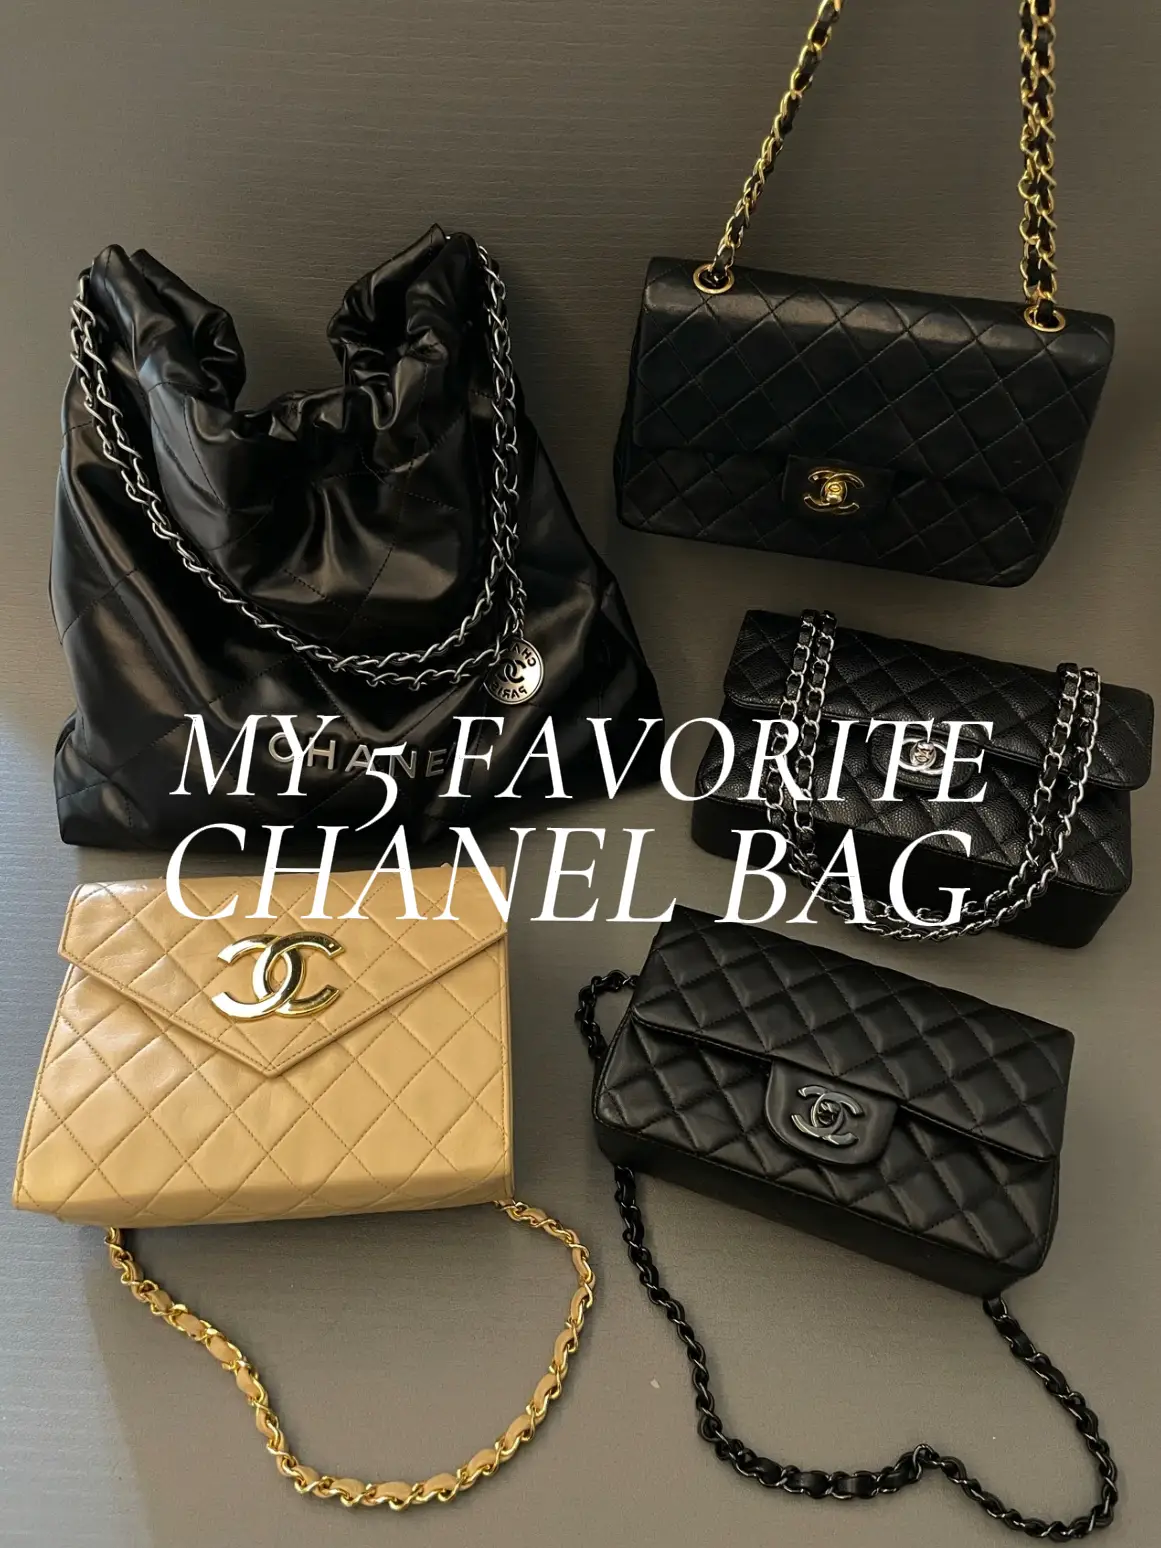 Chanel Bag Jennie Kim - Lemon8 Search